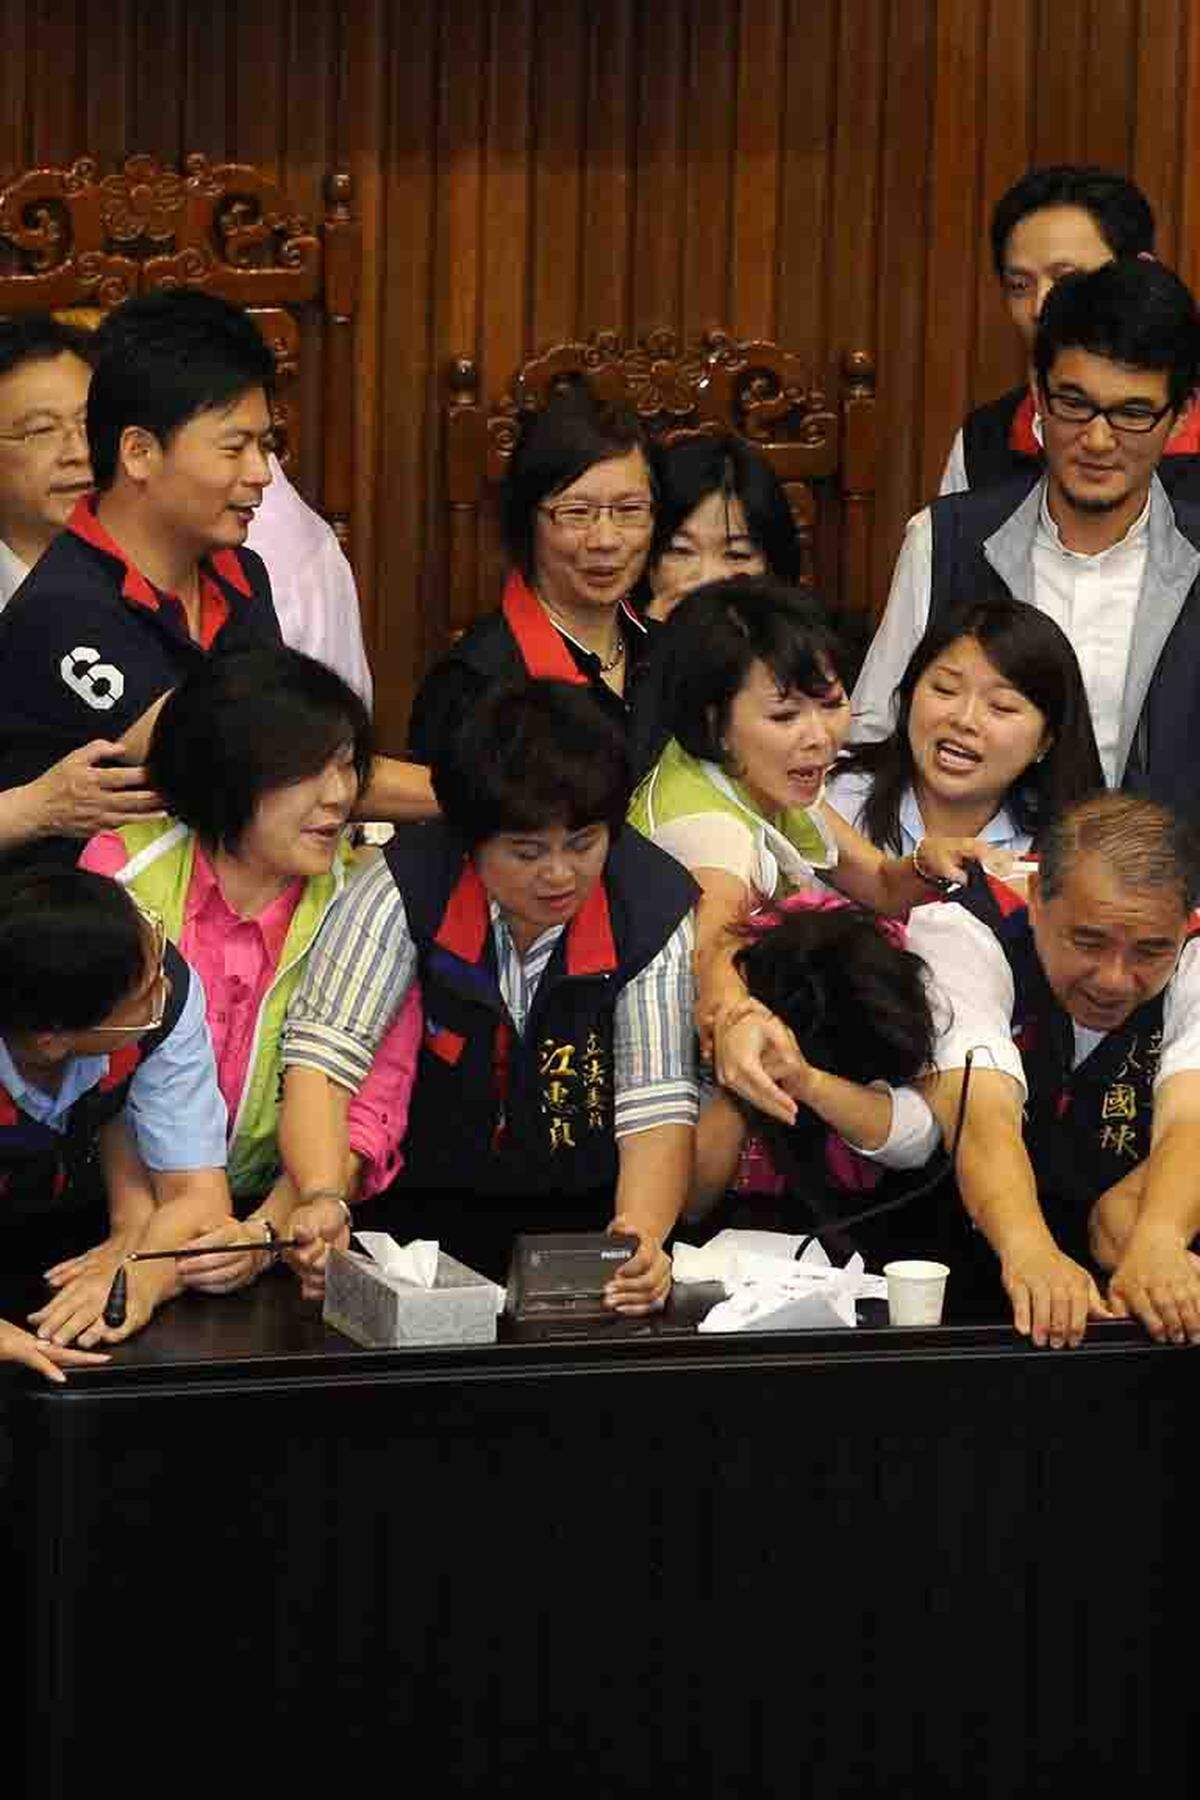 Erst im Juni 2013 war in Taiwans Parlament ein Streit über die Abschaffung einer Kapitalsteuer in eine handfeste Rauferei ausgeartet. Abgeordnete von Regierung und Opposition versuchten, sich mit den Fäusten Zugang zum Rednerpult zu verschaffen. Eine Parlamentarierin schüttete Kaffee auf eine Widersacherin. Eine weitere Abgeordnete brach vor laufenden Kameras in Tränen aus, als sie von einem männlichen Kollegen rabiat vom Podium vertrieben wurde.